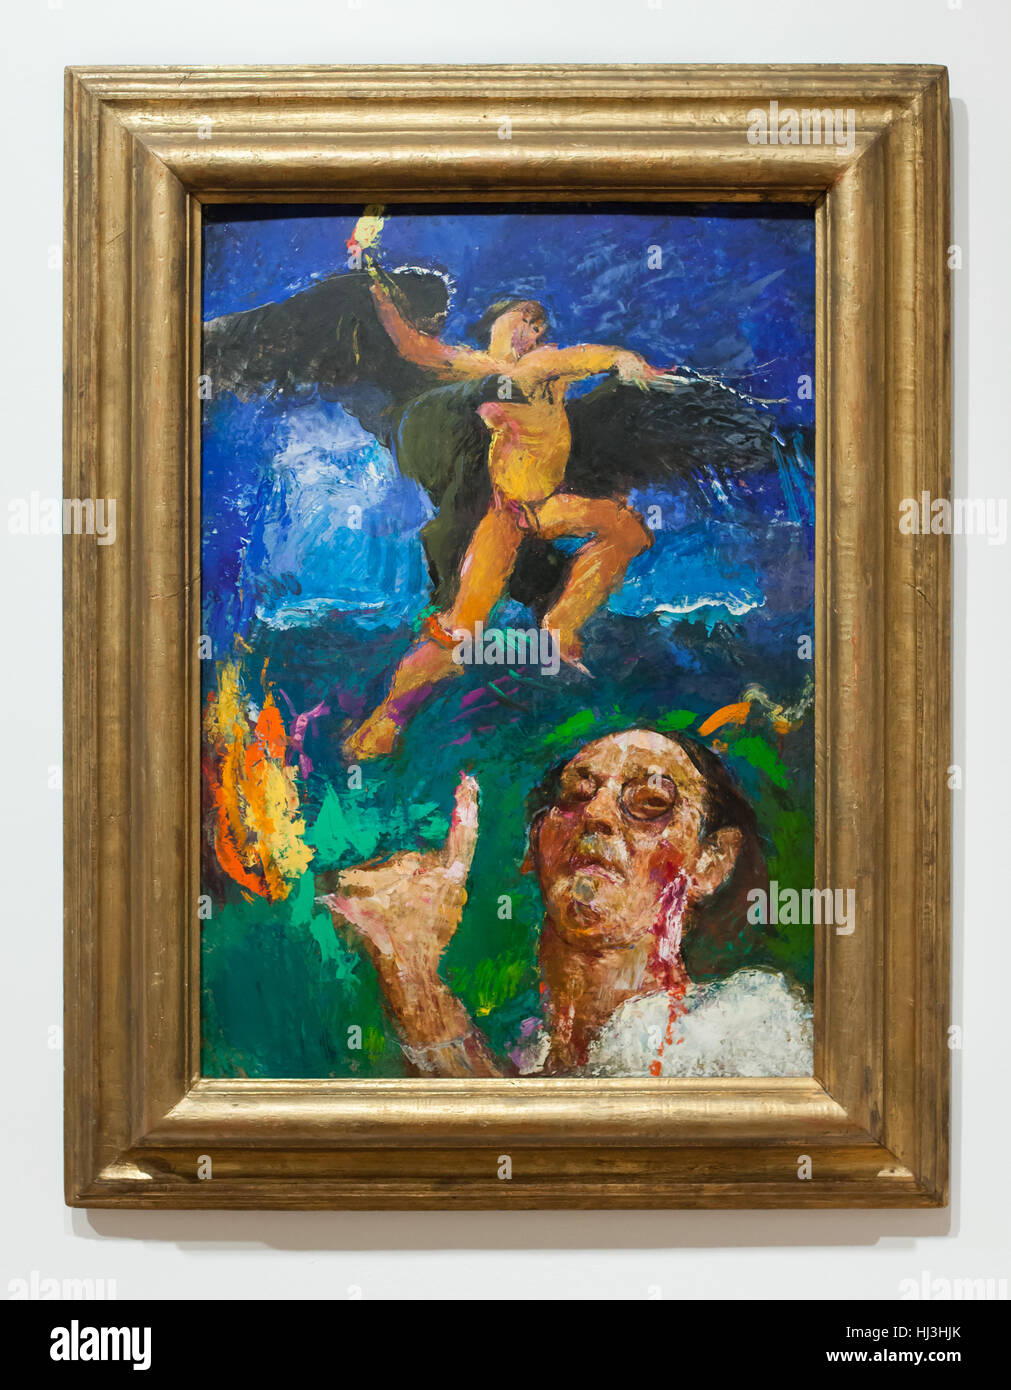 La pintura de la bomba atómica (1944) por el pintor expresionista austríaco  Anton Kolig en exhibición en el Museo Museo de Viena (Wien) en Viena,  Austria. La obra fue pintada poco después